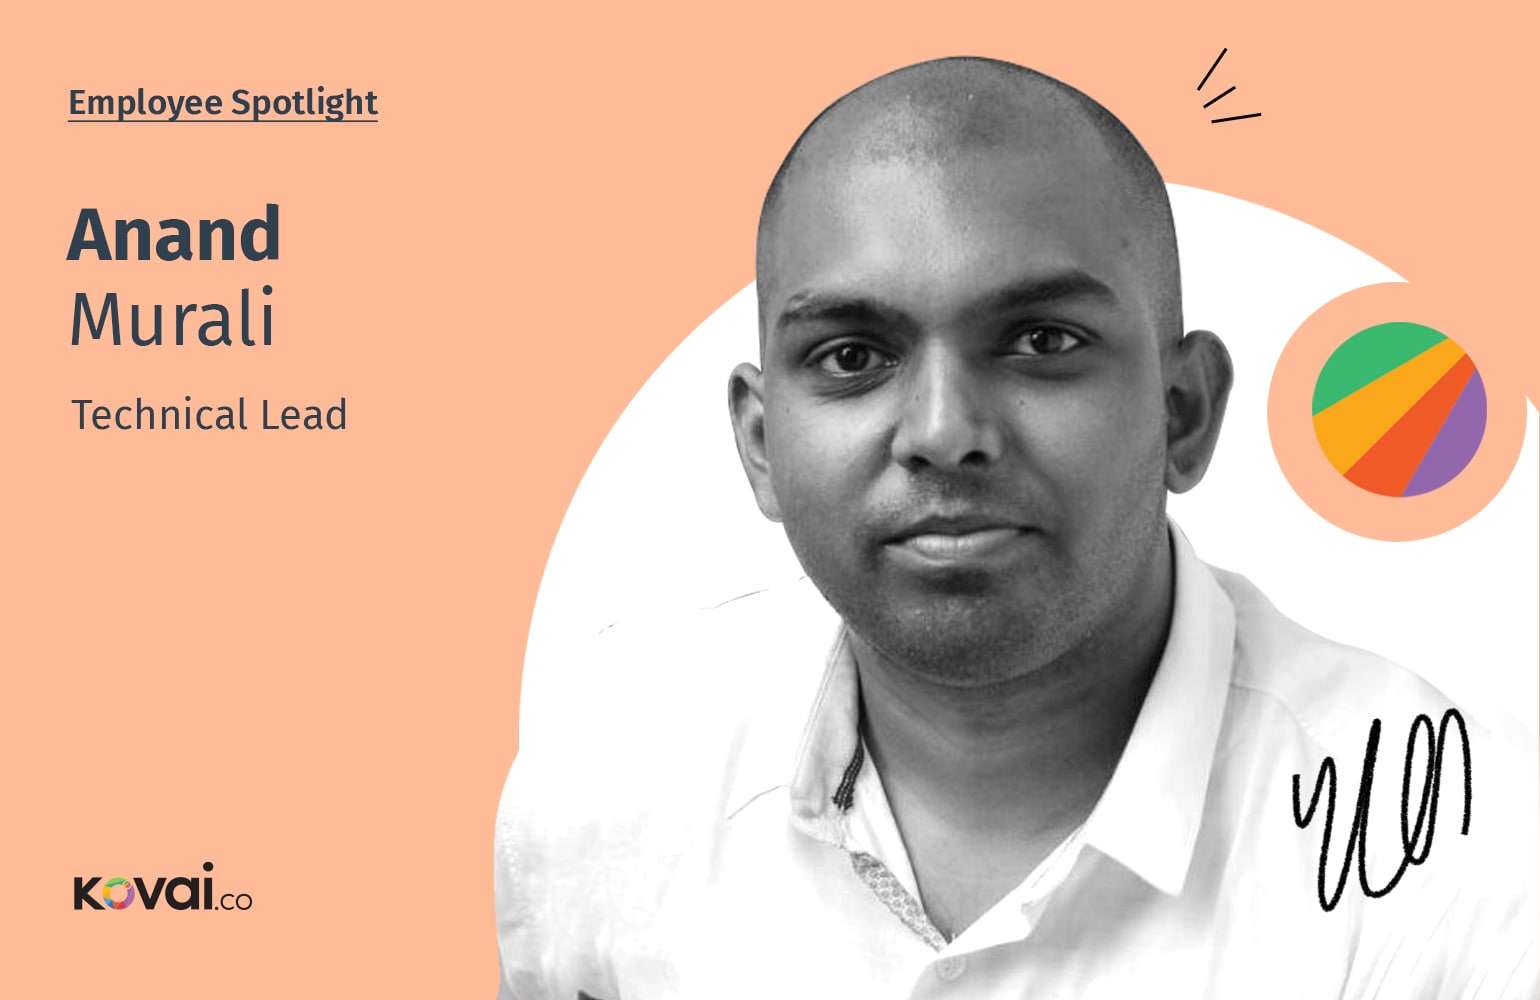 Anand Murali: Employee Spotlight